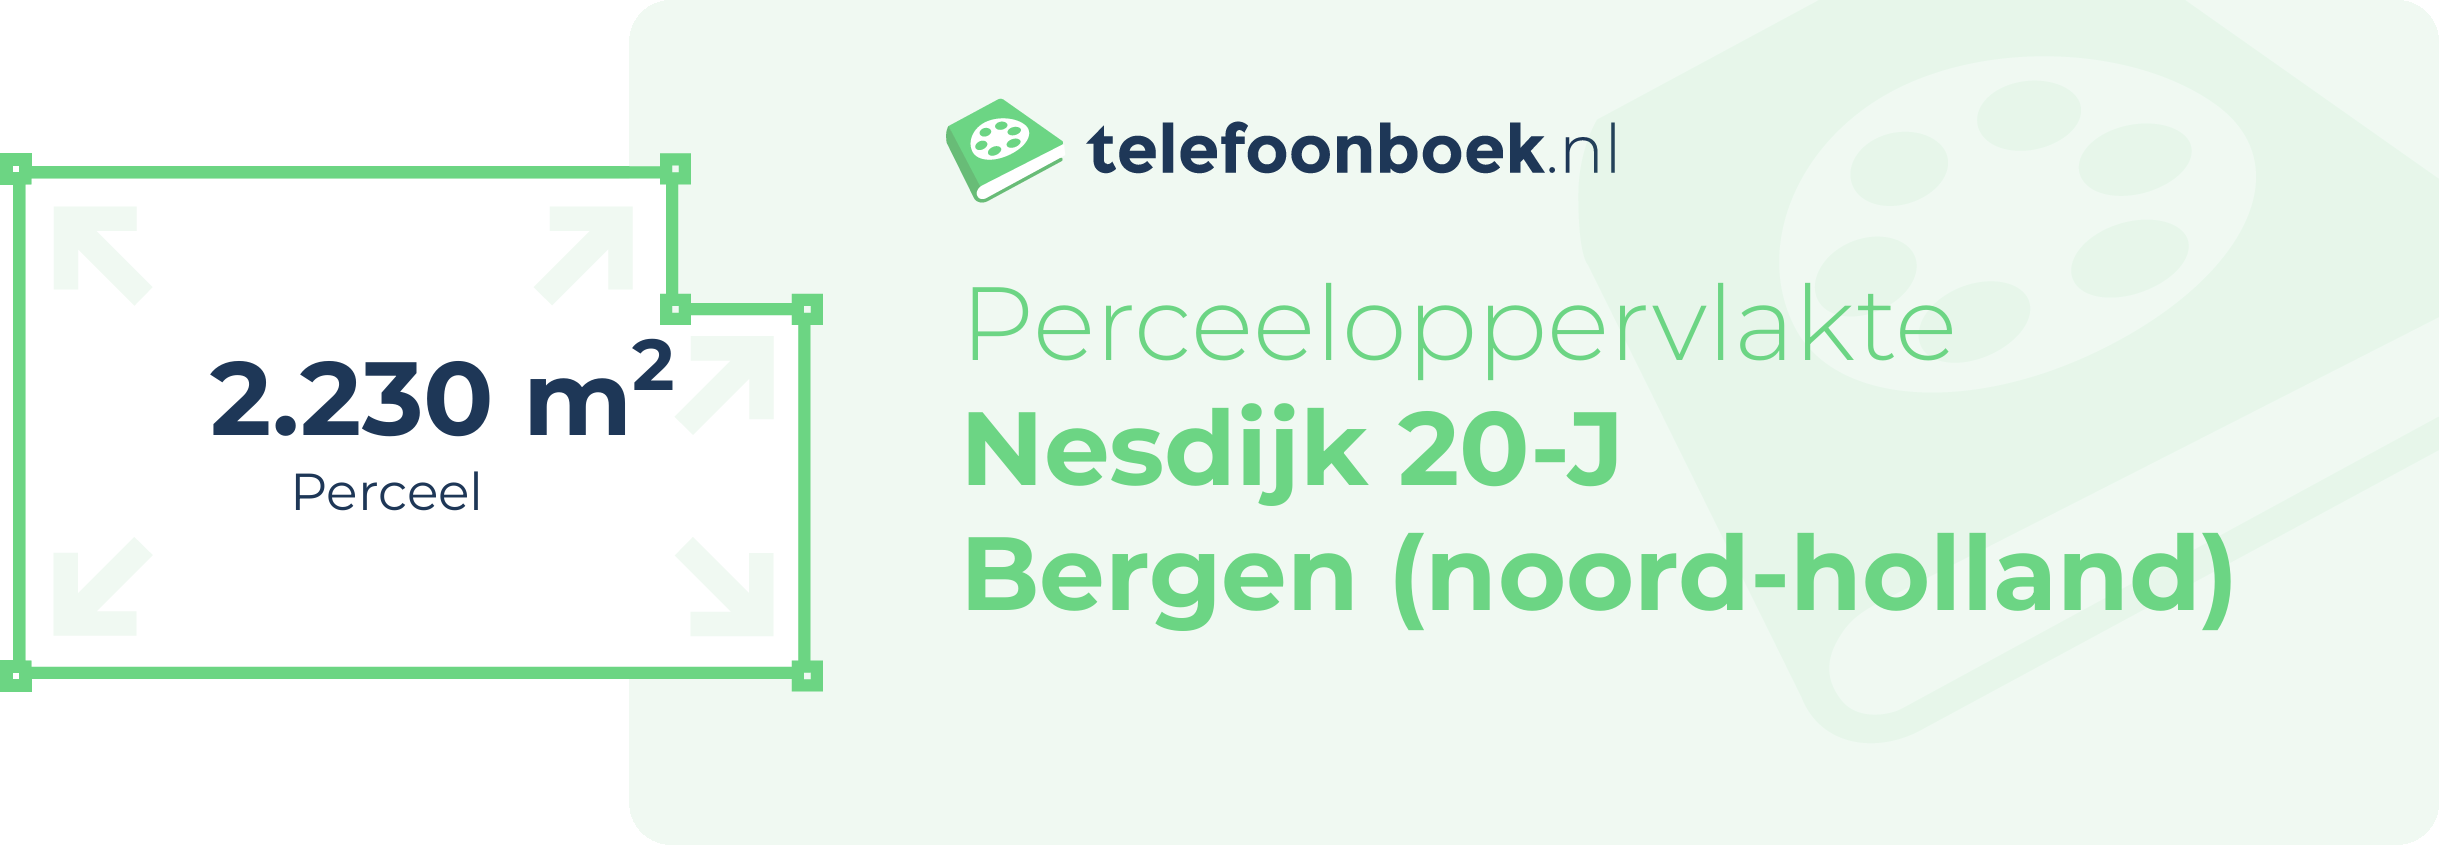 Perceeloppervlakte Nesdijk 20-J Bergen (Noord-Holland)